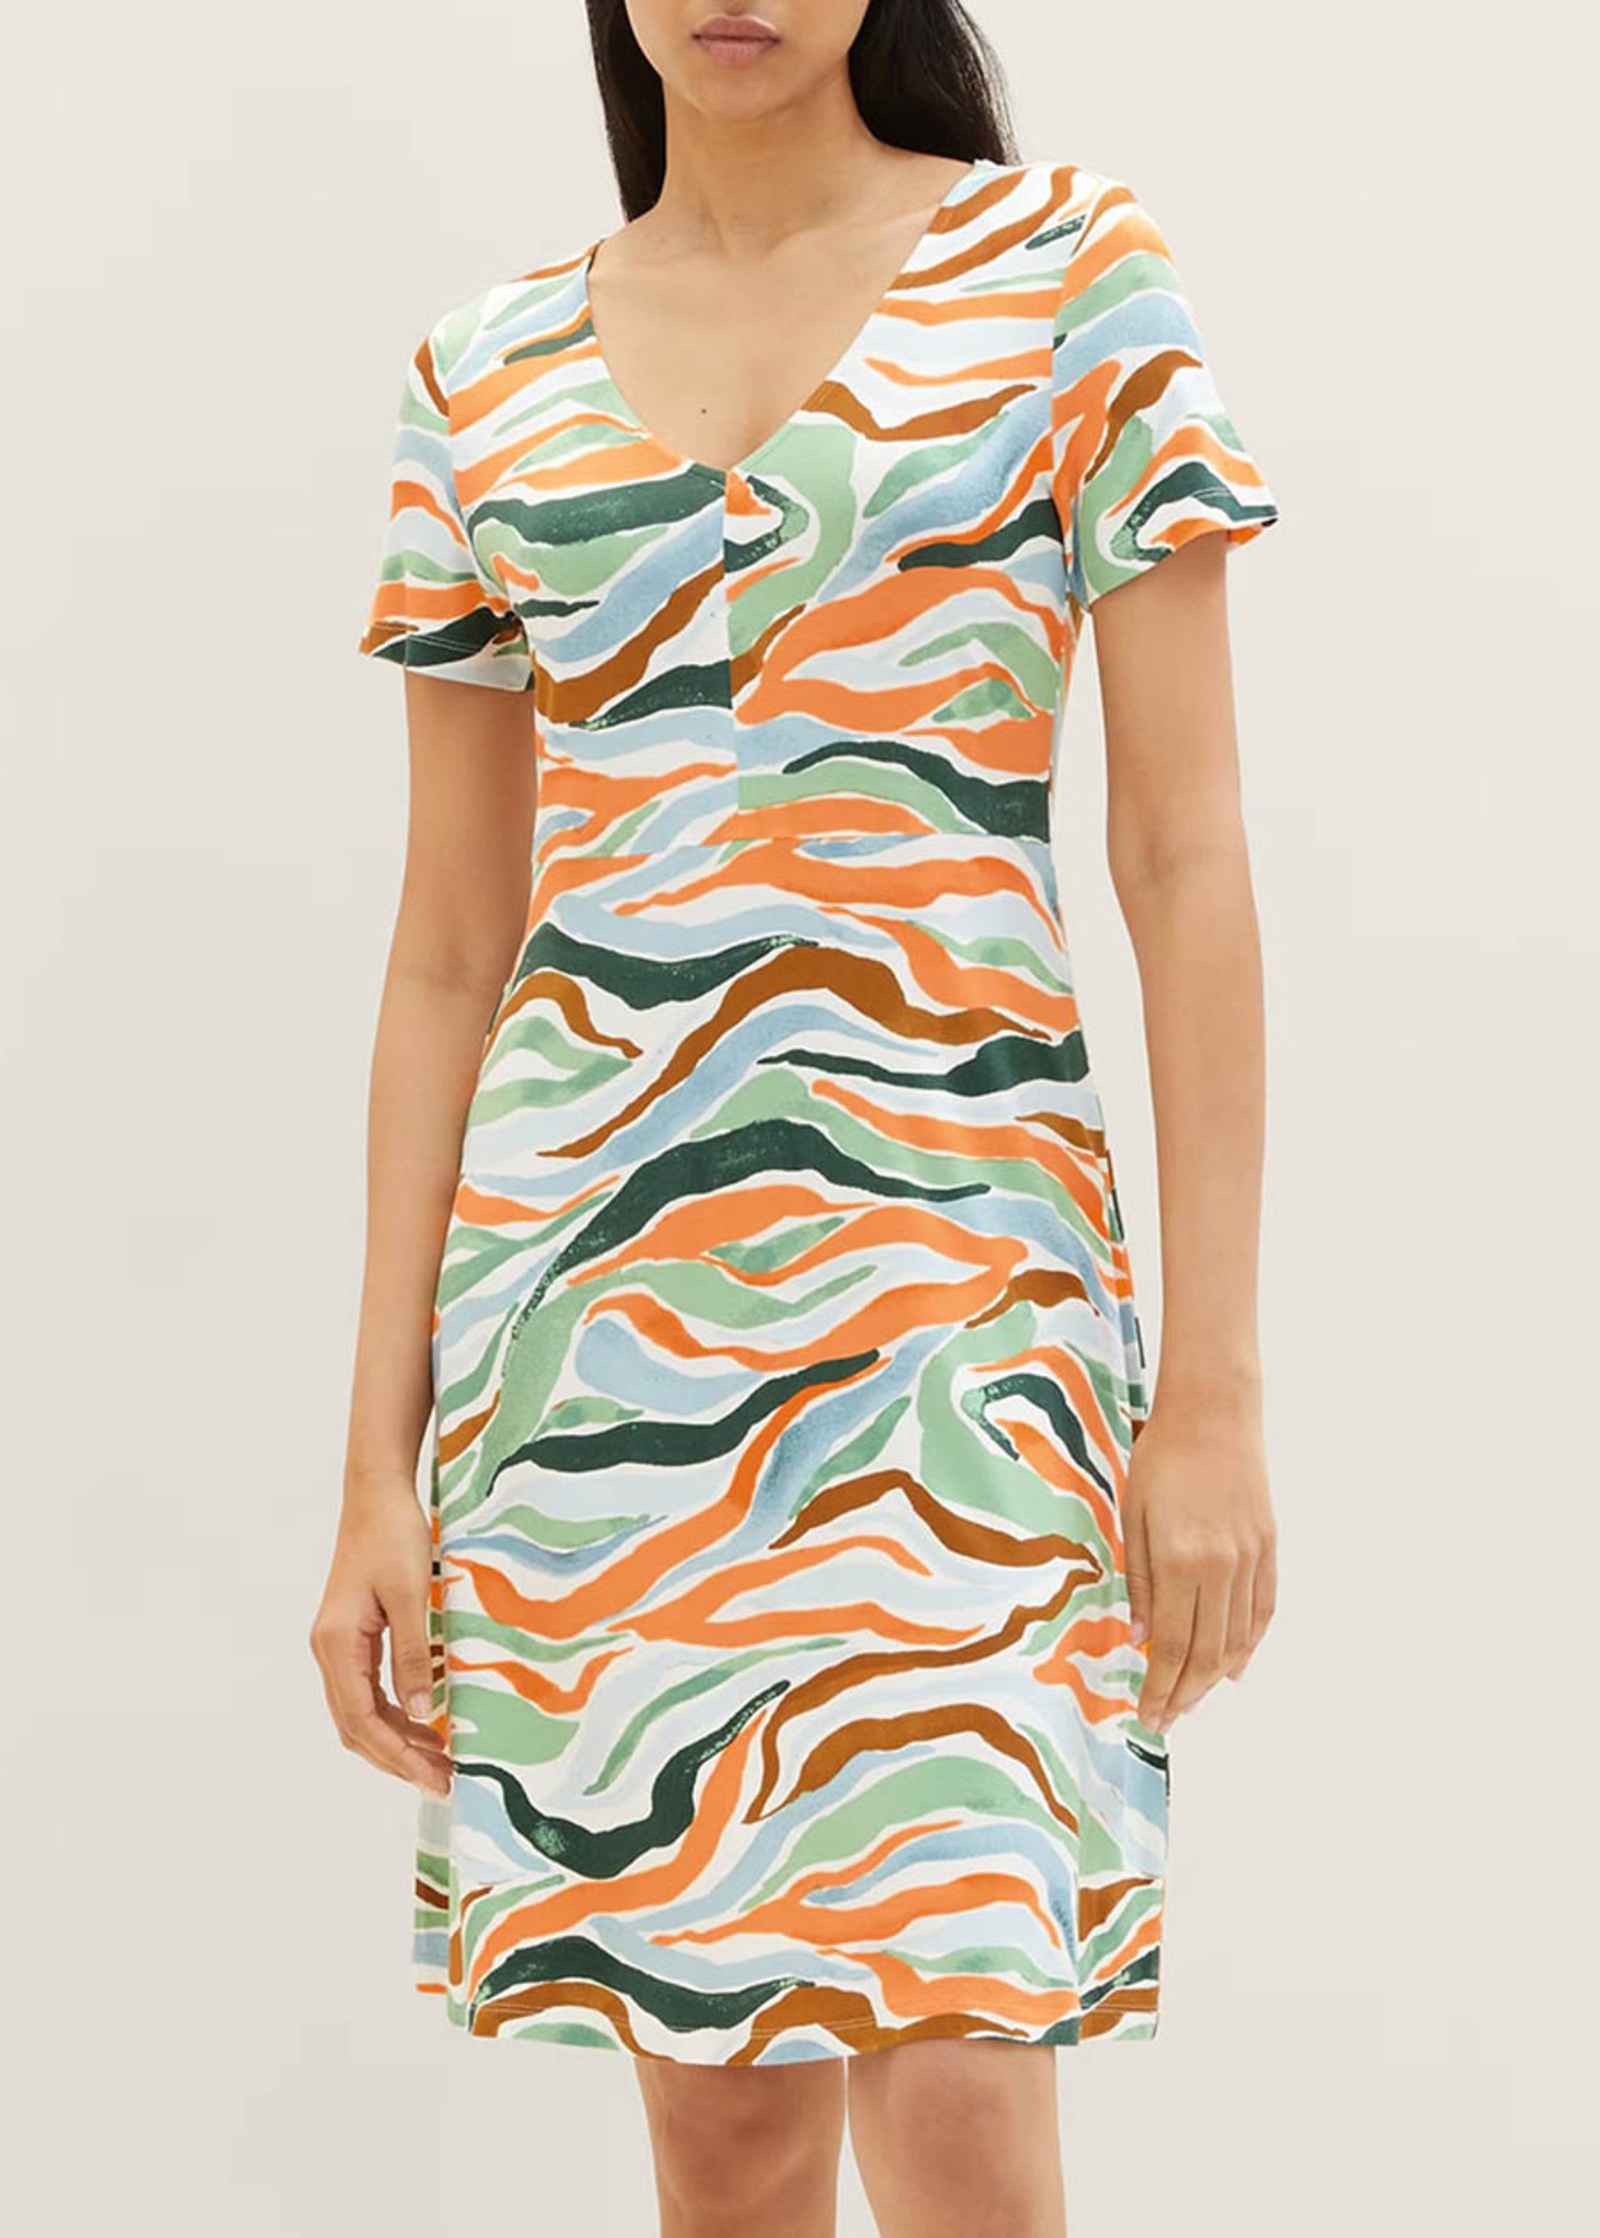 Tom Tailor® Dress Colorful 38 Design Größe Wavy 